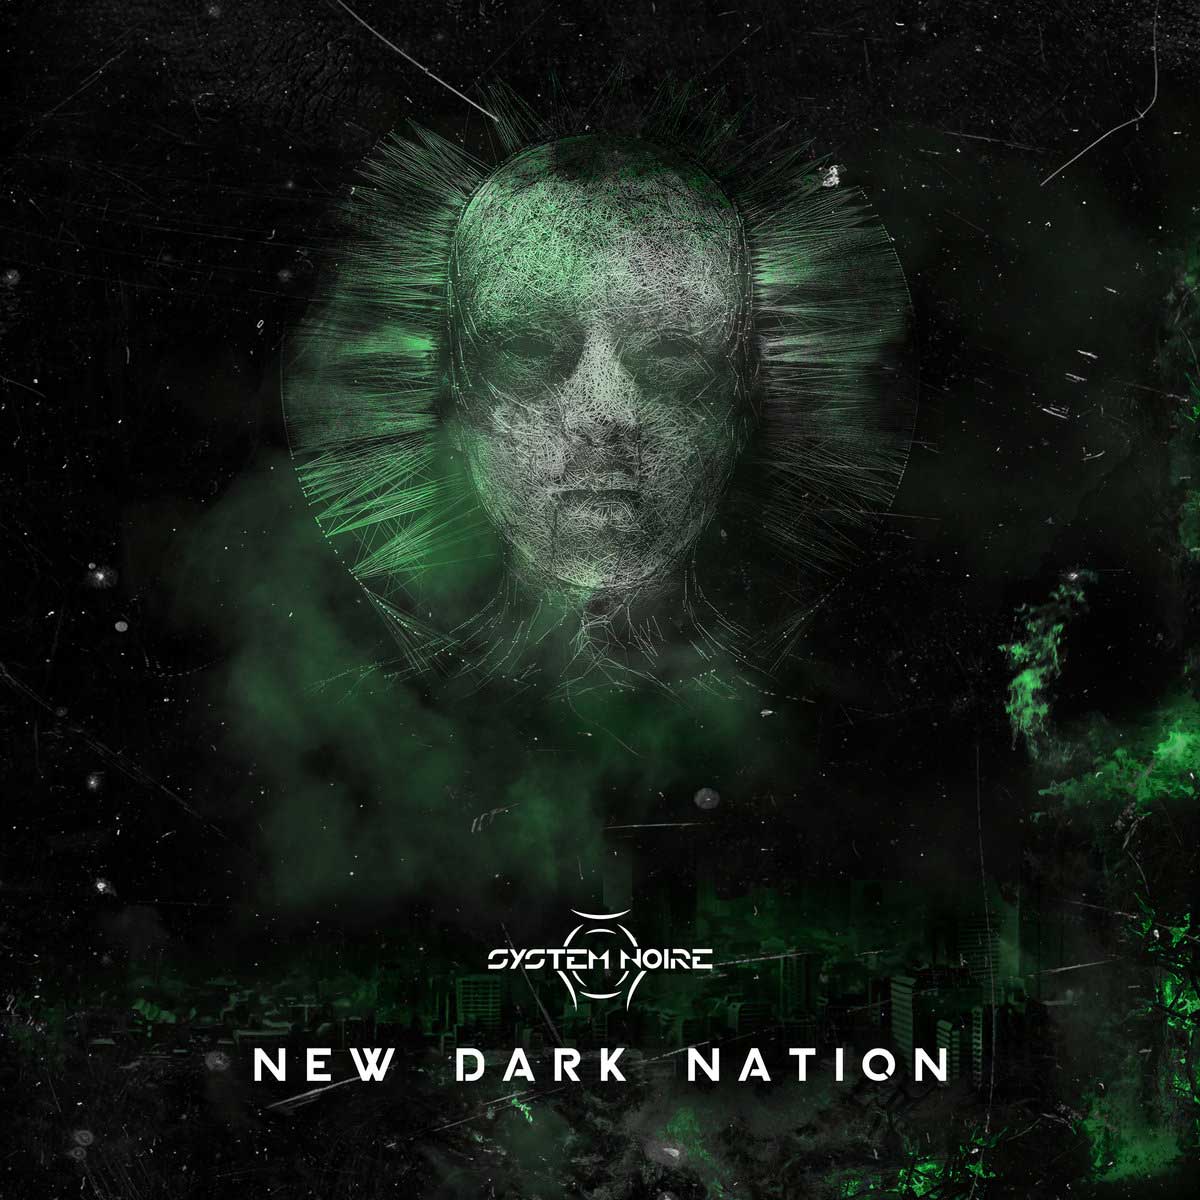 System Noire - New Dark Nation - System Noire - New Dark Nation